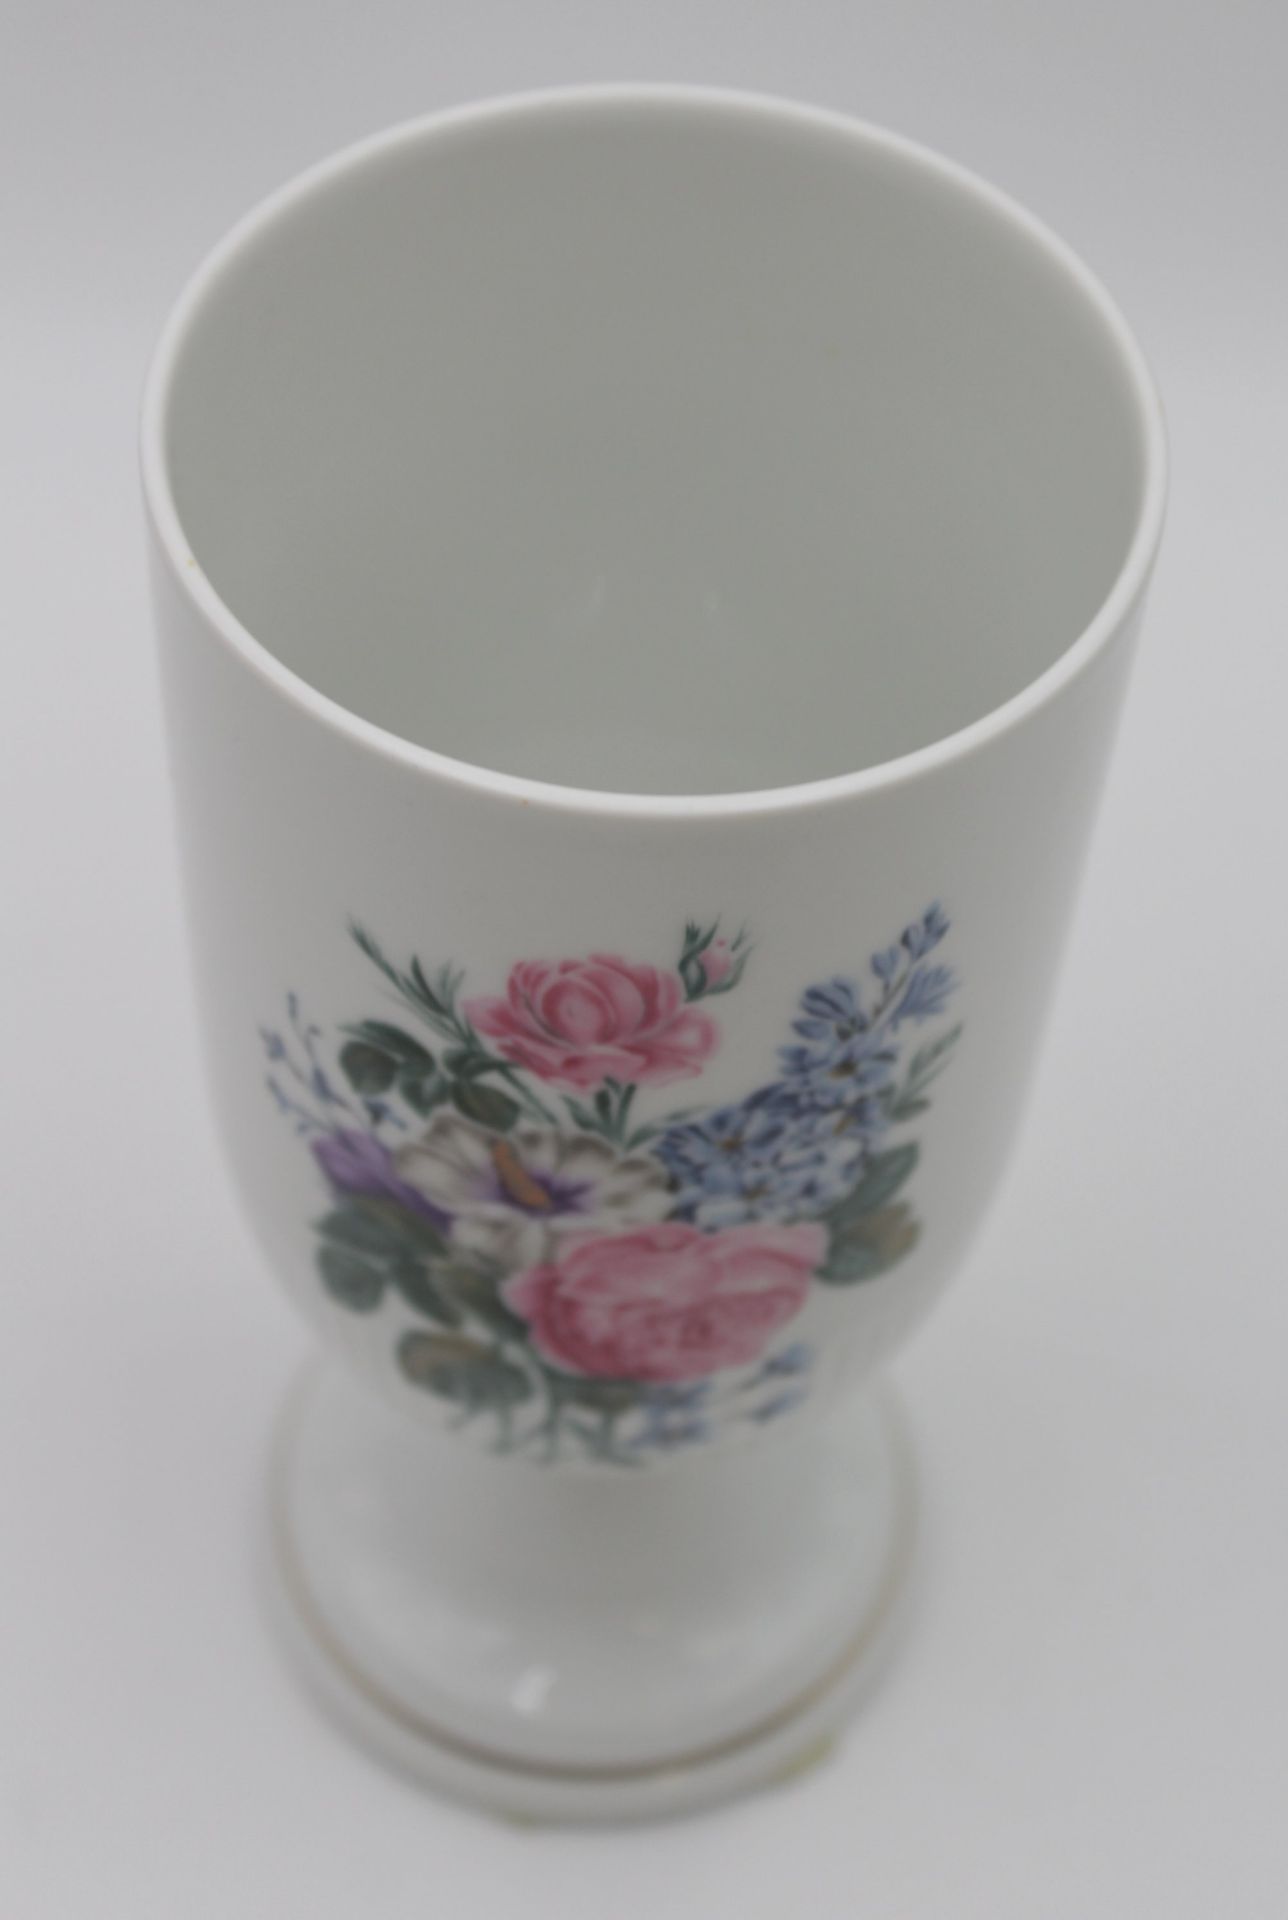 Vase auf Stand, Hutschenreuther, florales Dekor, Marke durchschliffen, H-20,8cm. - Image 2 of 5